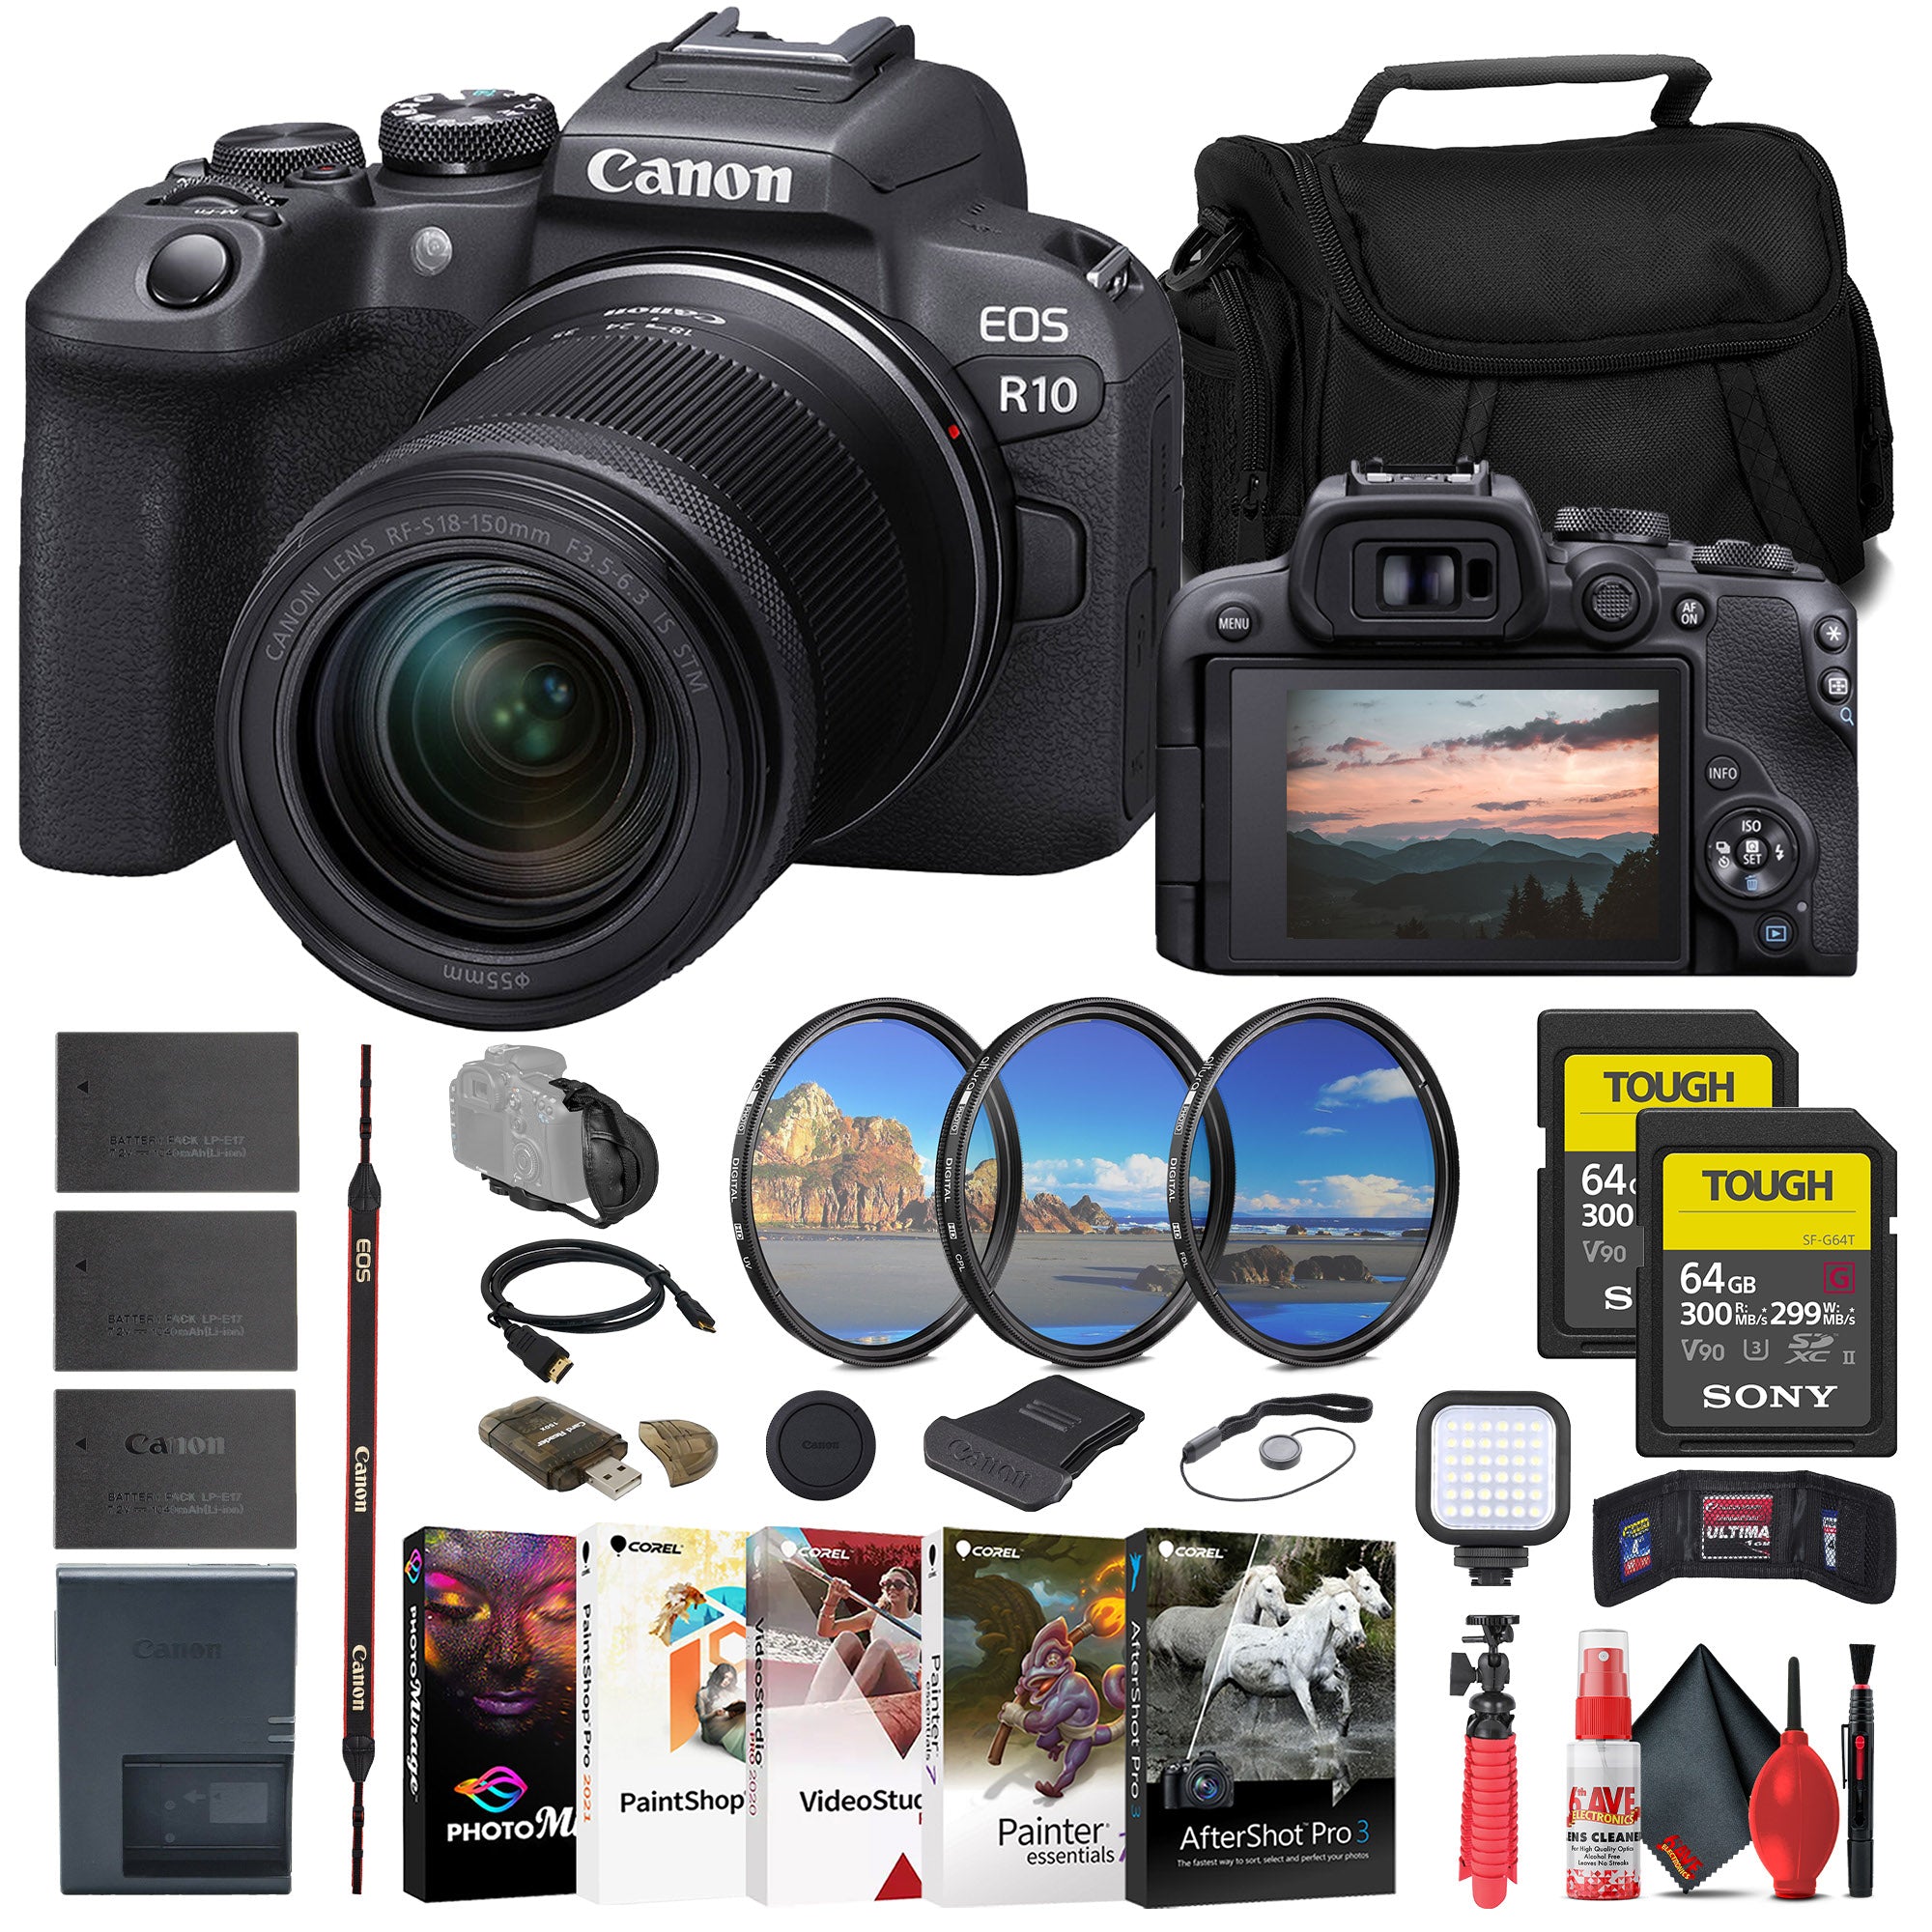 Canon EOS R10 Mirrorless Camera W/ 18-150mm Lens + 2 x 64GB TOUGH Card + More